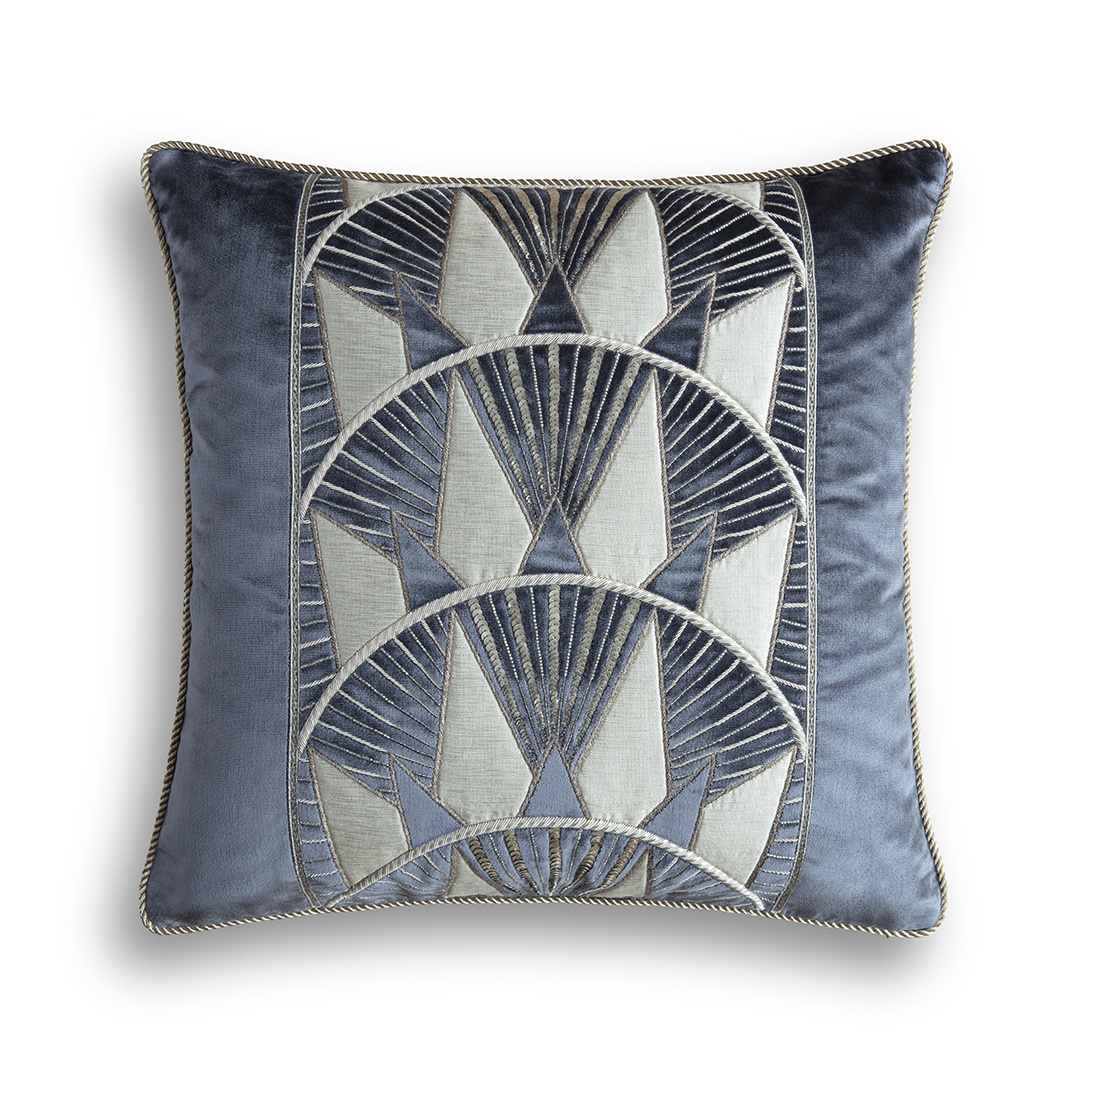 Rockefeller cushion in Capri silk velvet - Charcoal - Beaumont & Fletcher